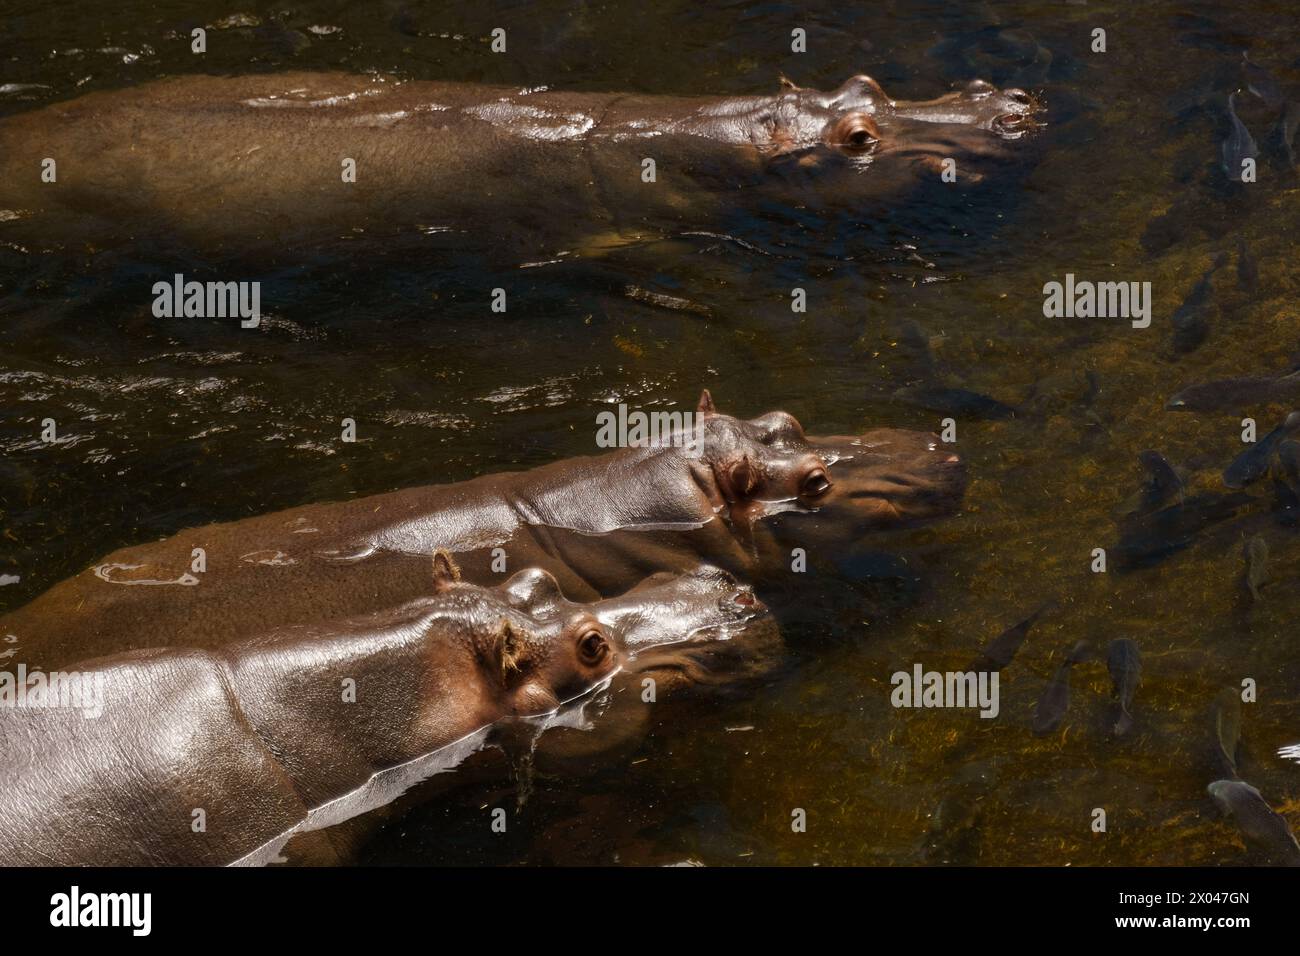 Drei Flusspferde, große Meeressäuger, schwimmen in einem Gewässer, ihre Körper teilweise untergetaucht, nur ihre Köpfe sichtbar. Stockfoto